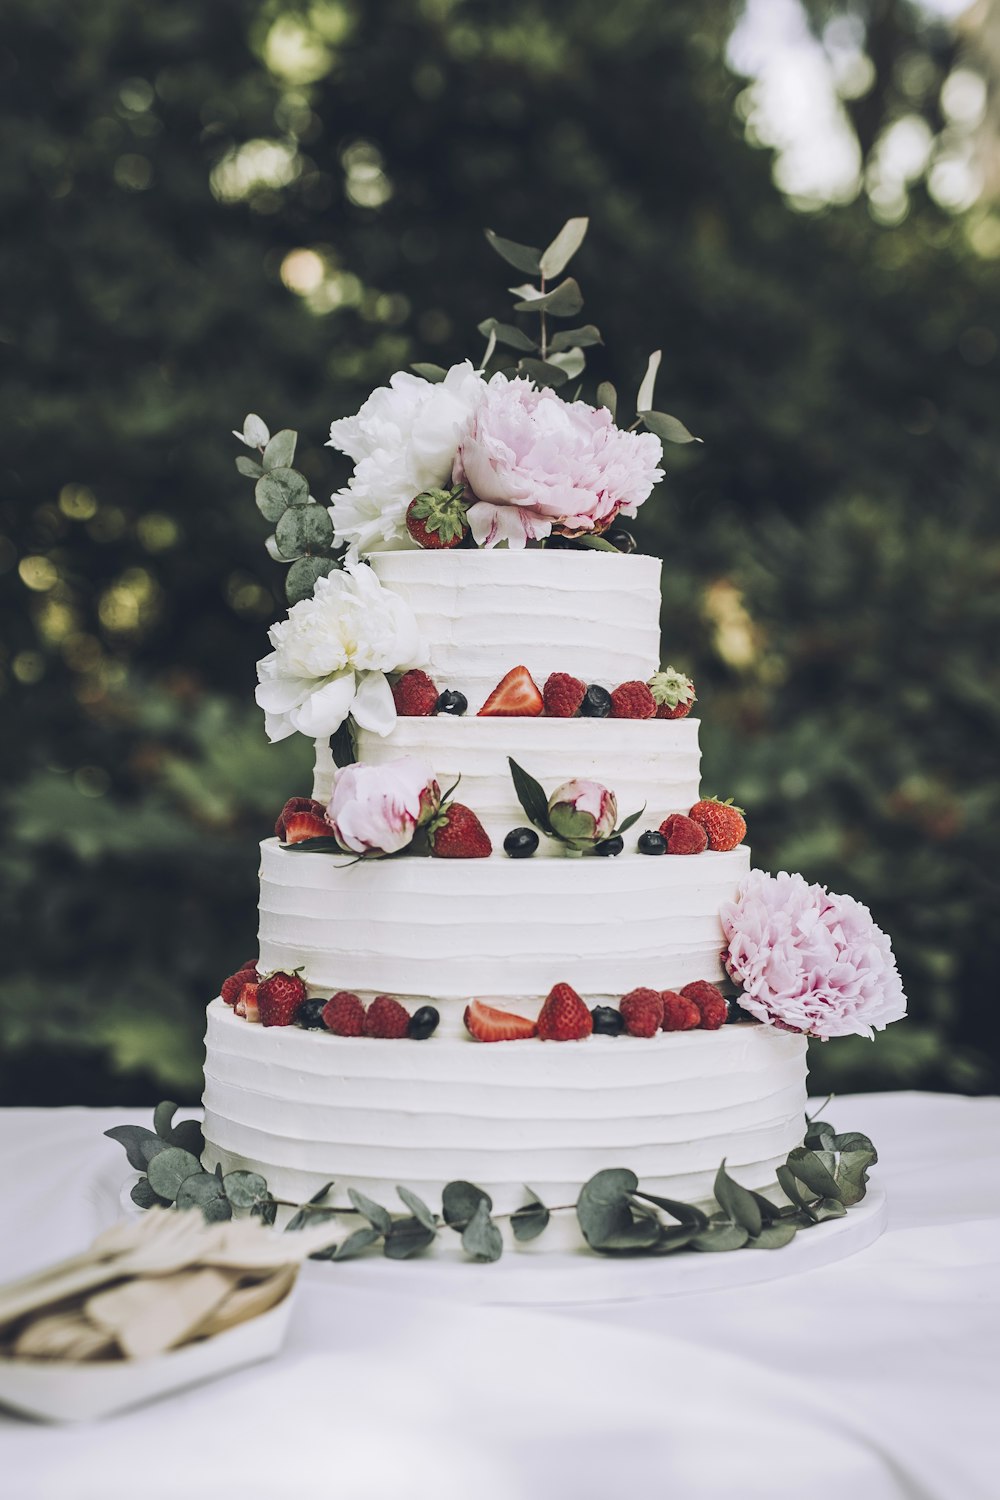 eine weiße Hochzeitstorte mit frischen Erdbeeren und Blumen